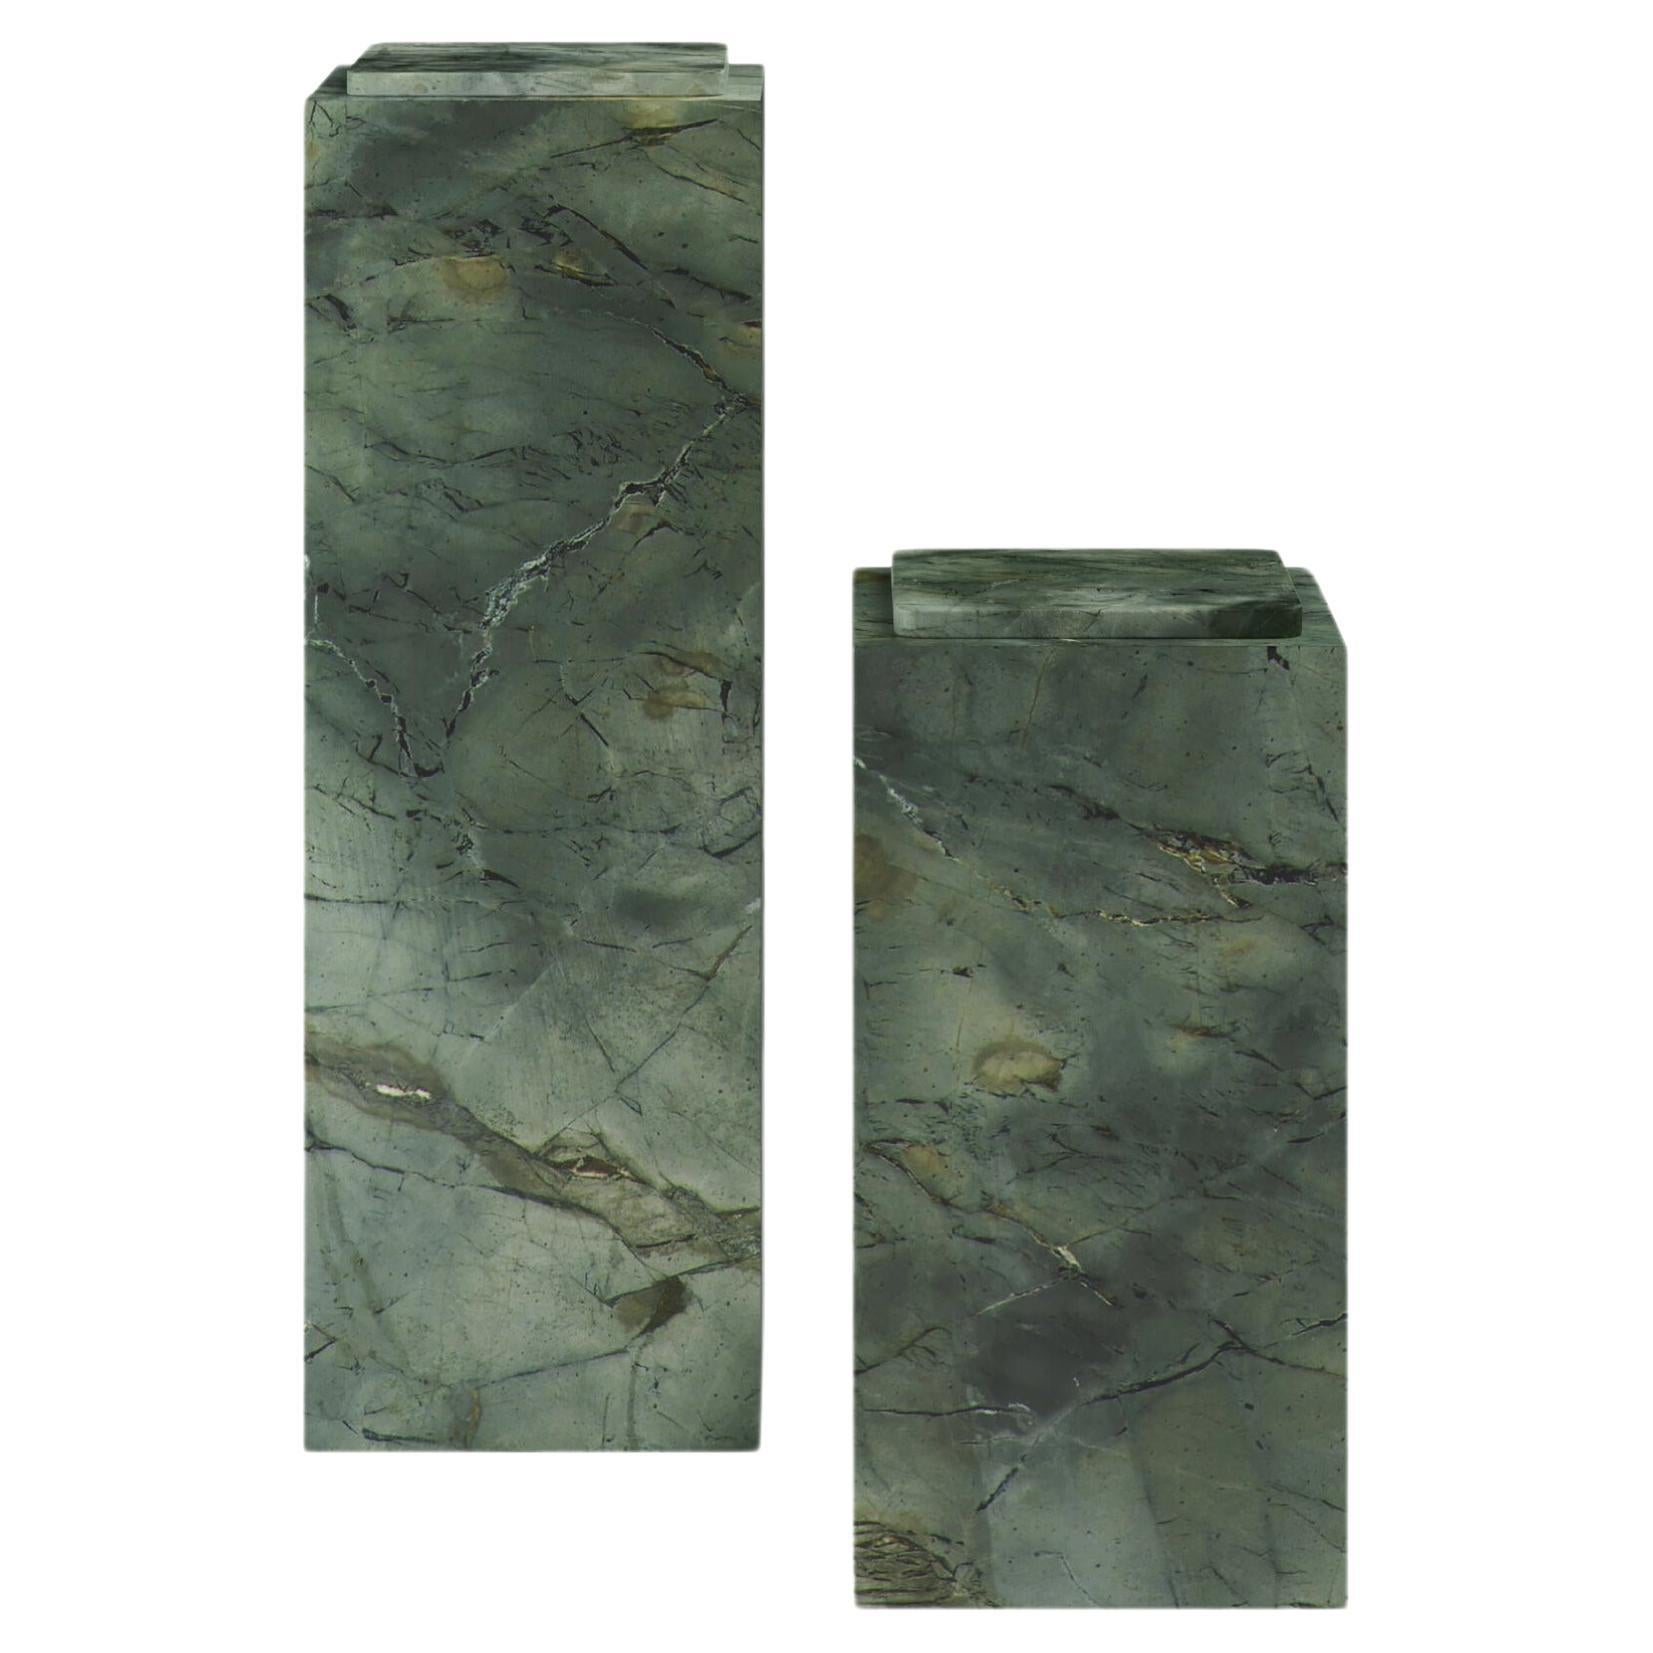 FORM(LA) Cubo Pedestal 12”L x 12"W x 24”H Verde Edinburgh Marble For Sale